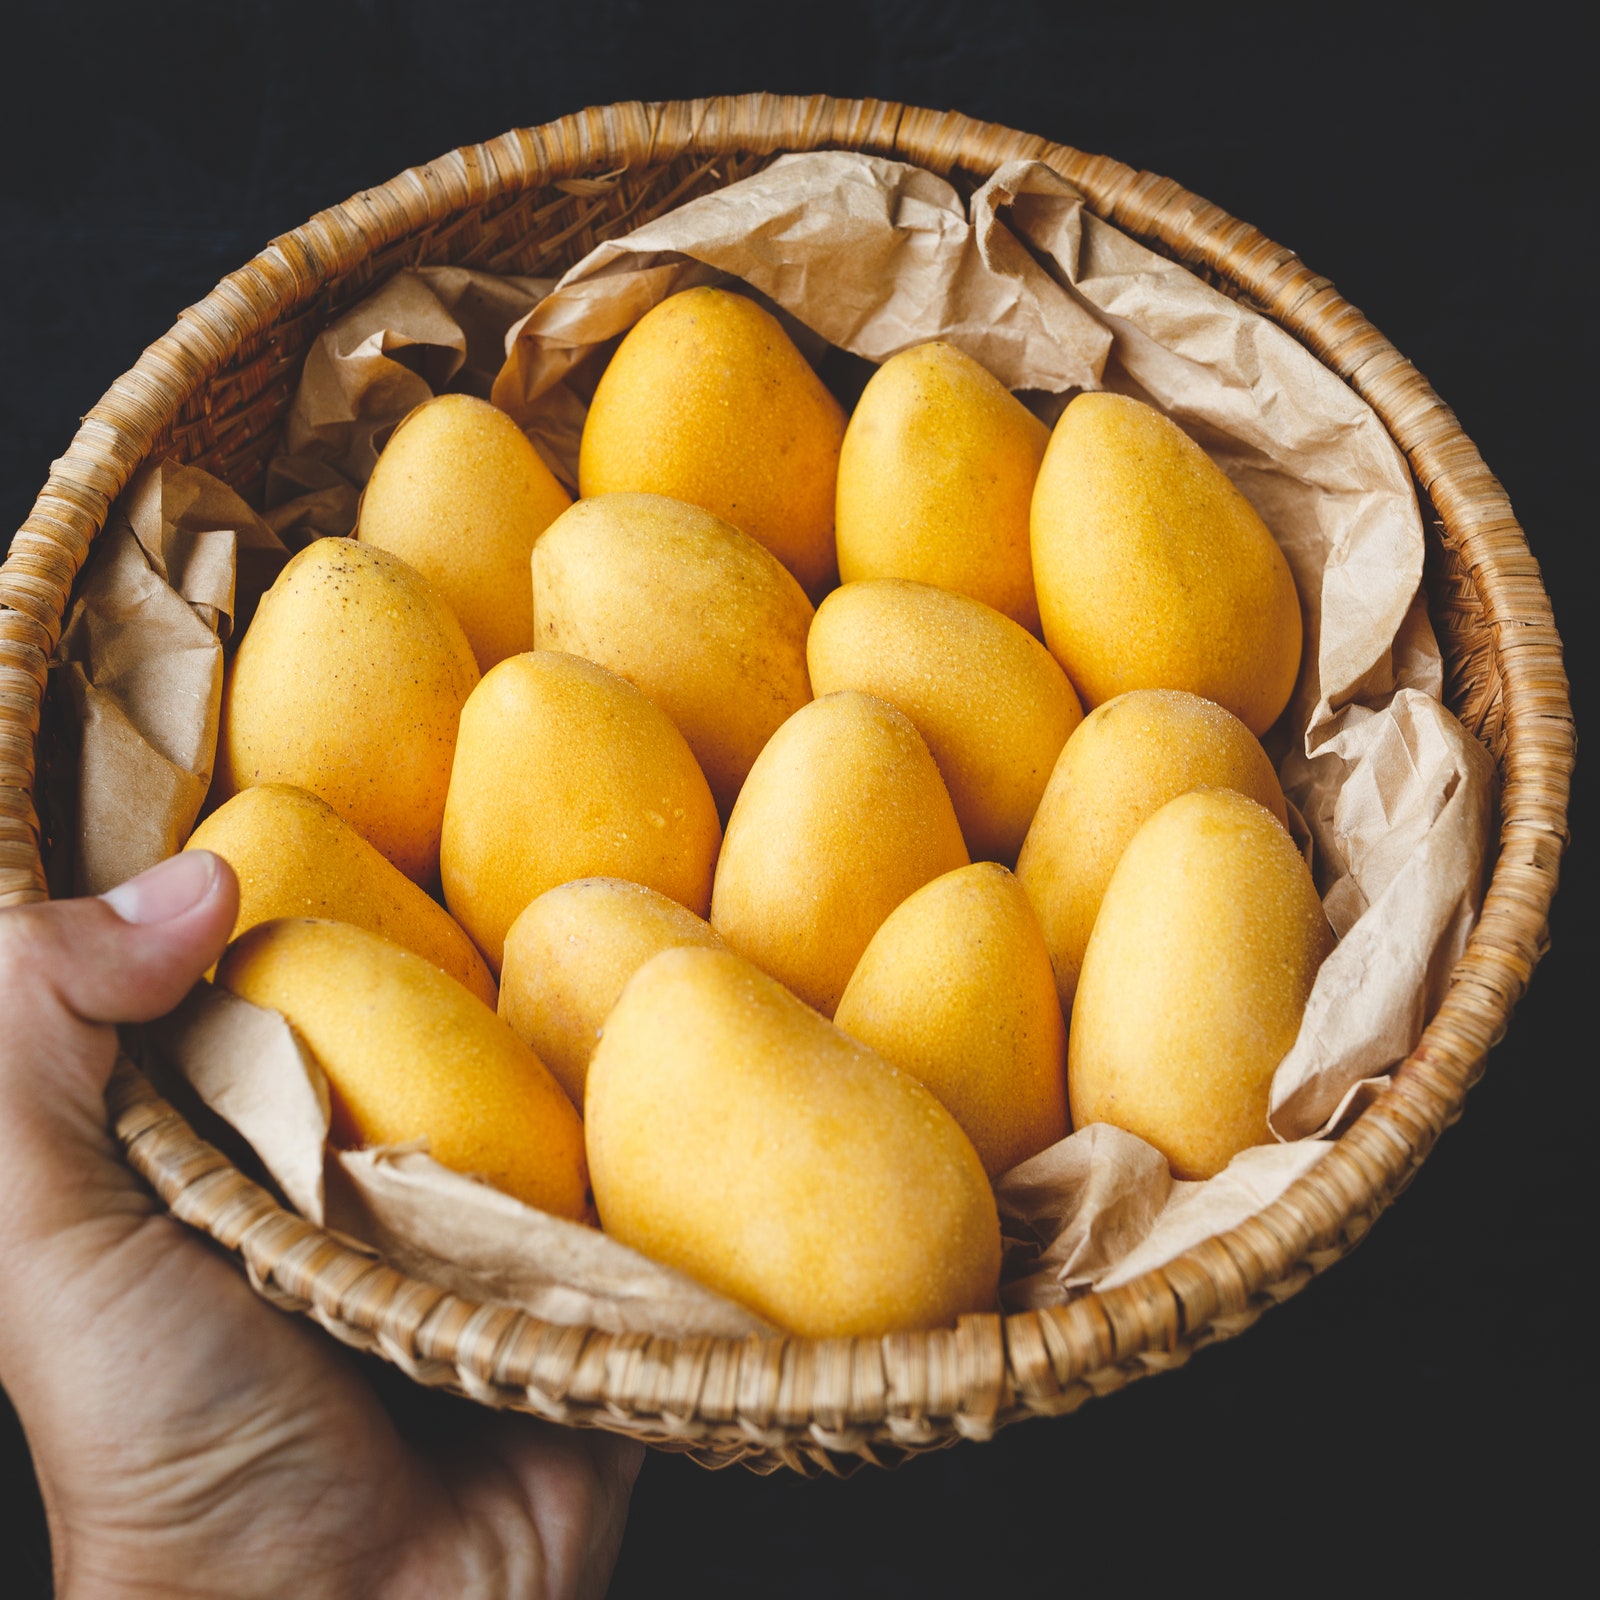 Блюда с пюре из манго &- главный фуд-тренд 2021 года